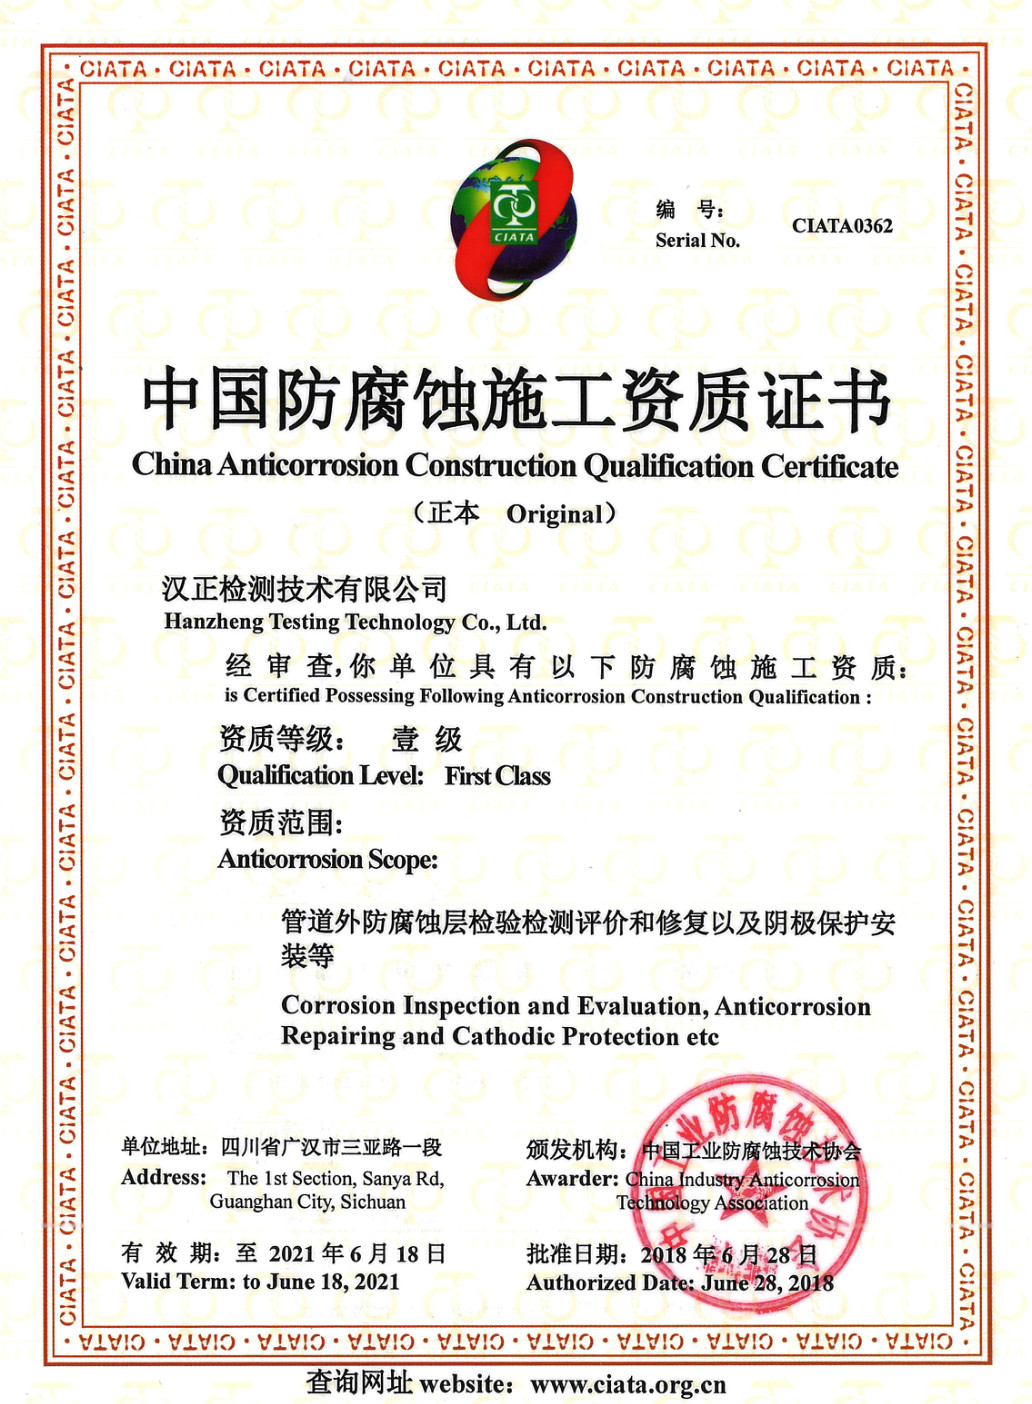 180628中国防腐蚀施工资质证书_meitu_2.jpg